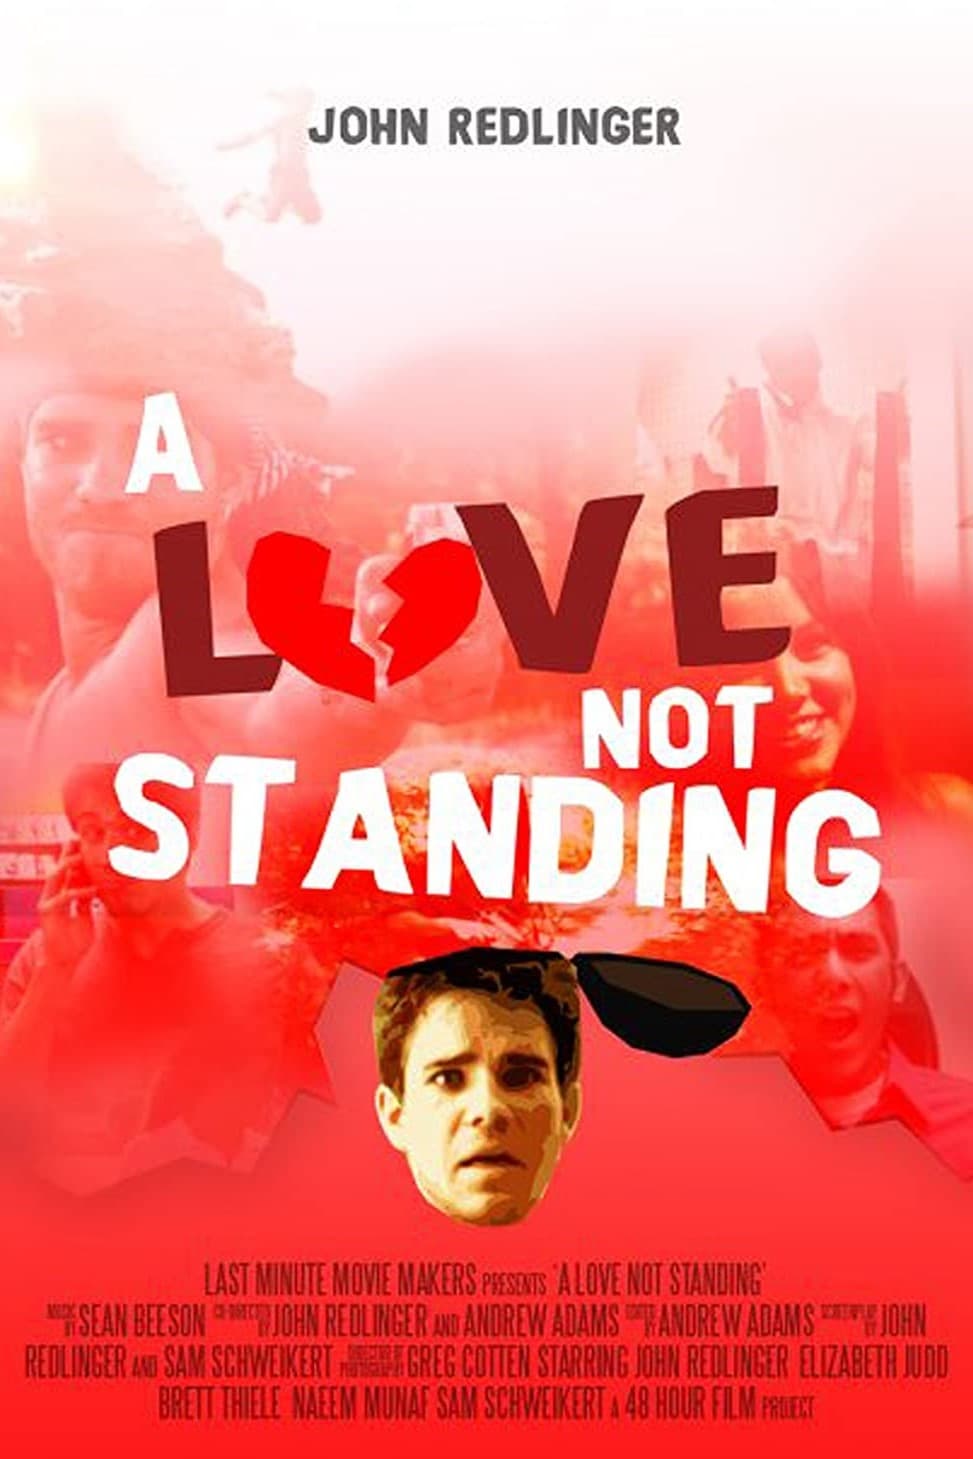 A Love Not Standing